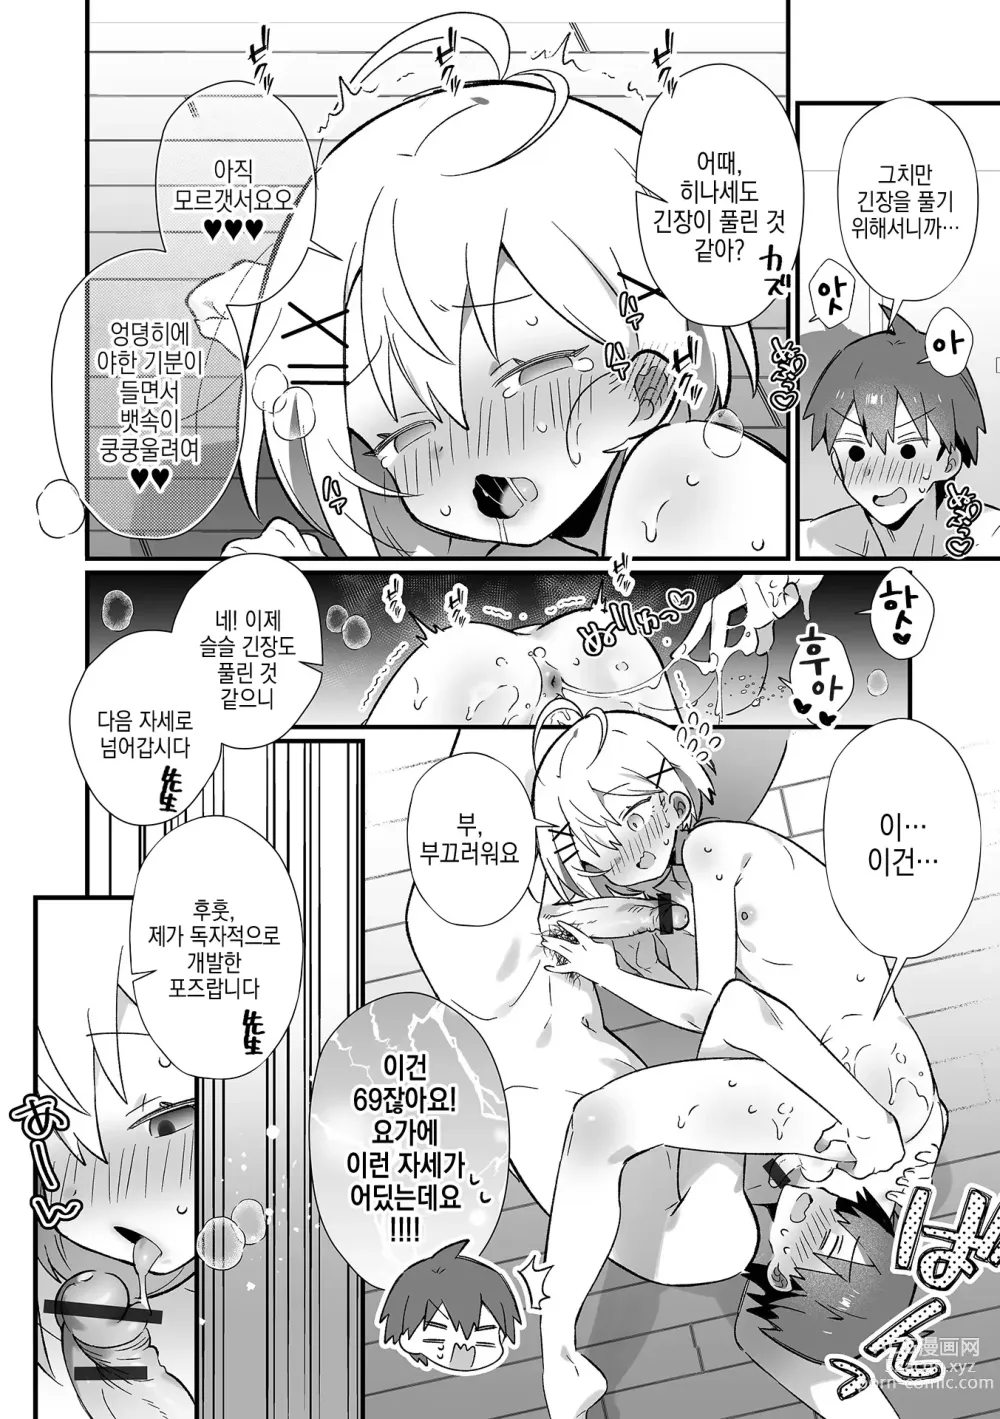 Page 7 of manga 알몸요가에서 낭자애♂랑 SEX 체험！？